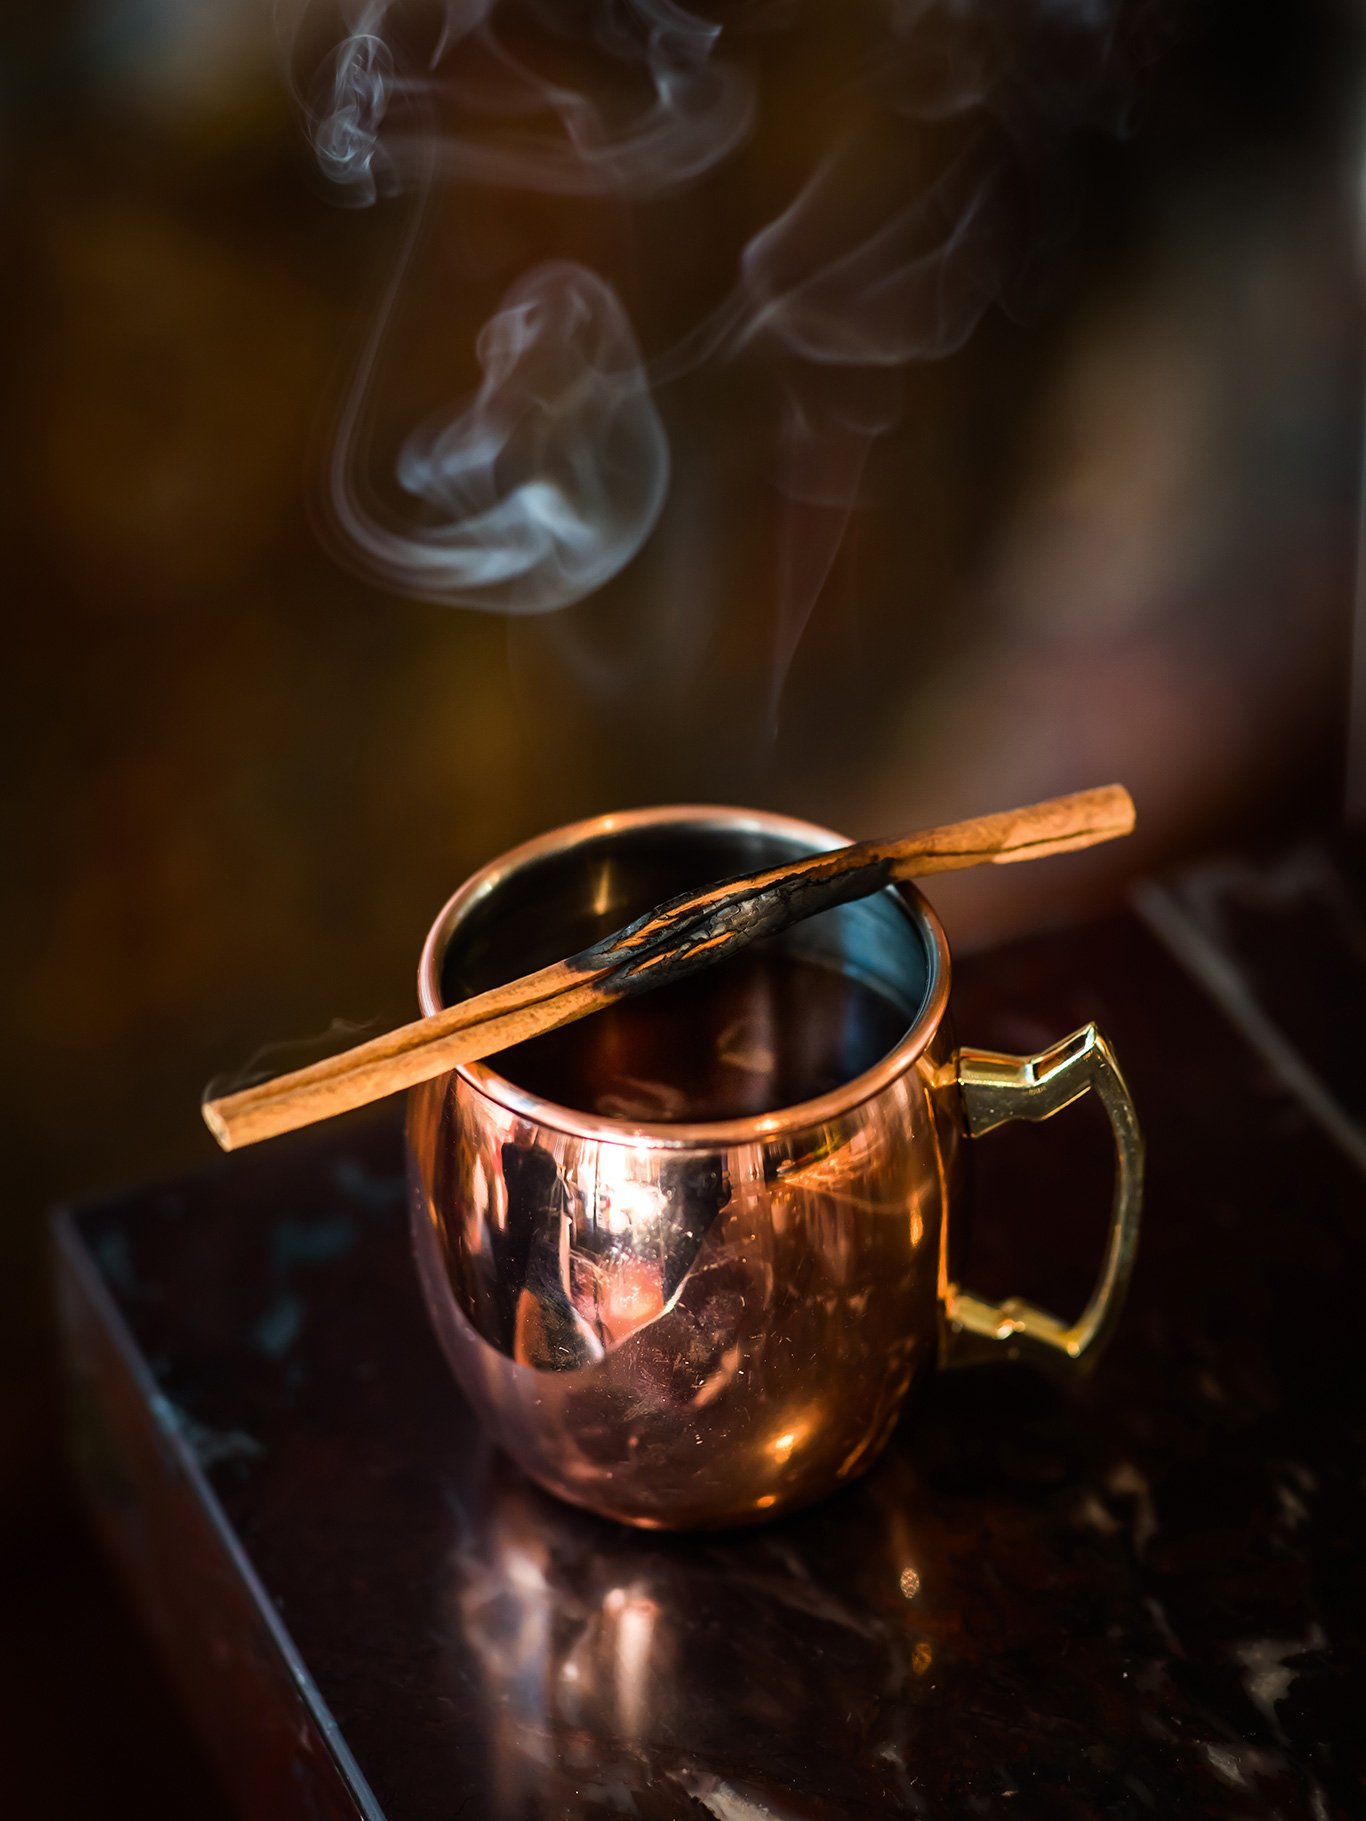 Hot Negron-Tea: 2,5 cl Chin Chin Gin | 2,5 cl Campari | 2,5 cl Falernum-Likör | (nicht zu heißer) Rooibos-Tee | gerührt | Topping: Zimtstange oneofone.at